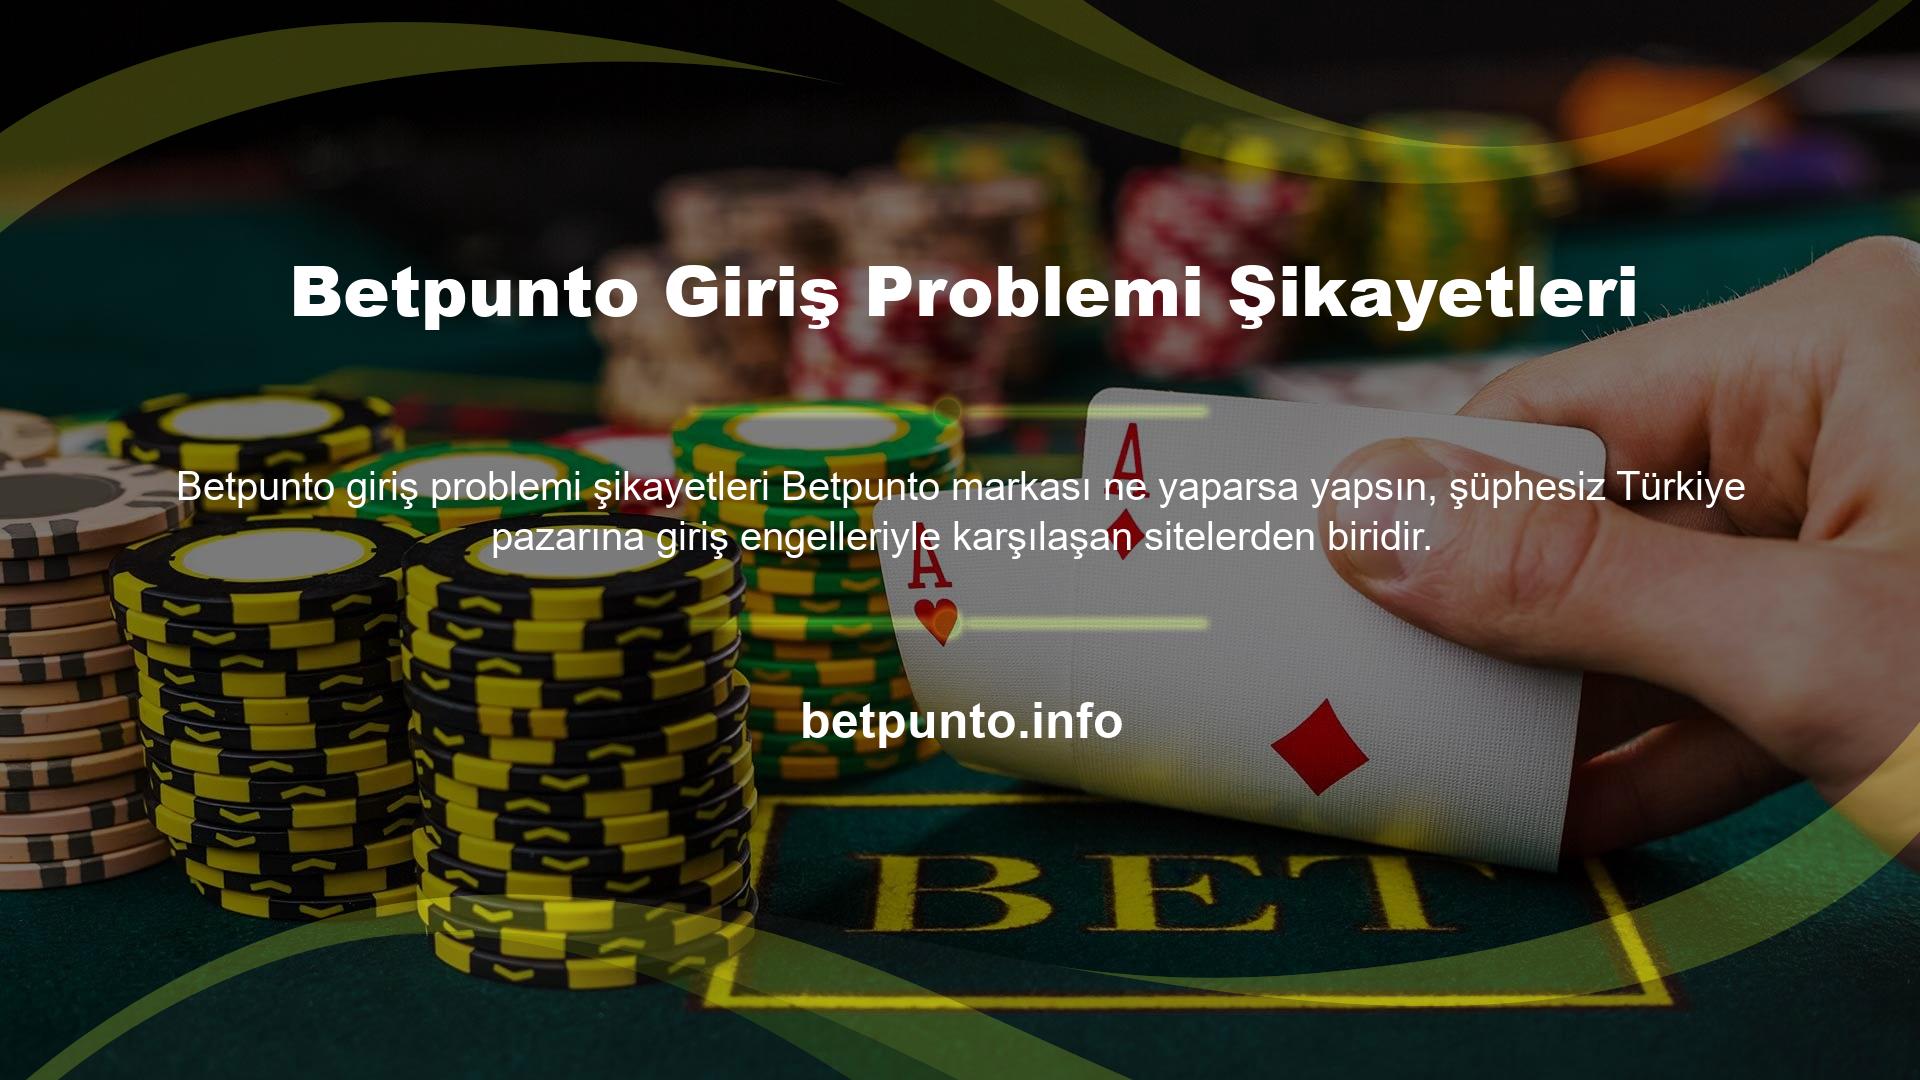 Betpunto, yabancı casino siteleriyle bağlantı sorunlarından şikayet ediyor